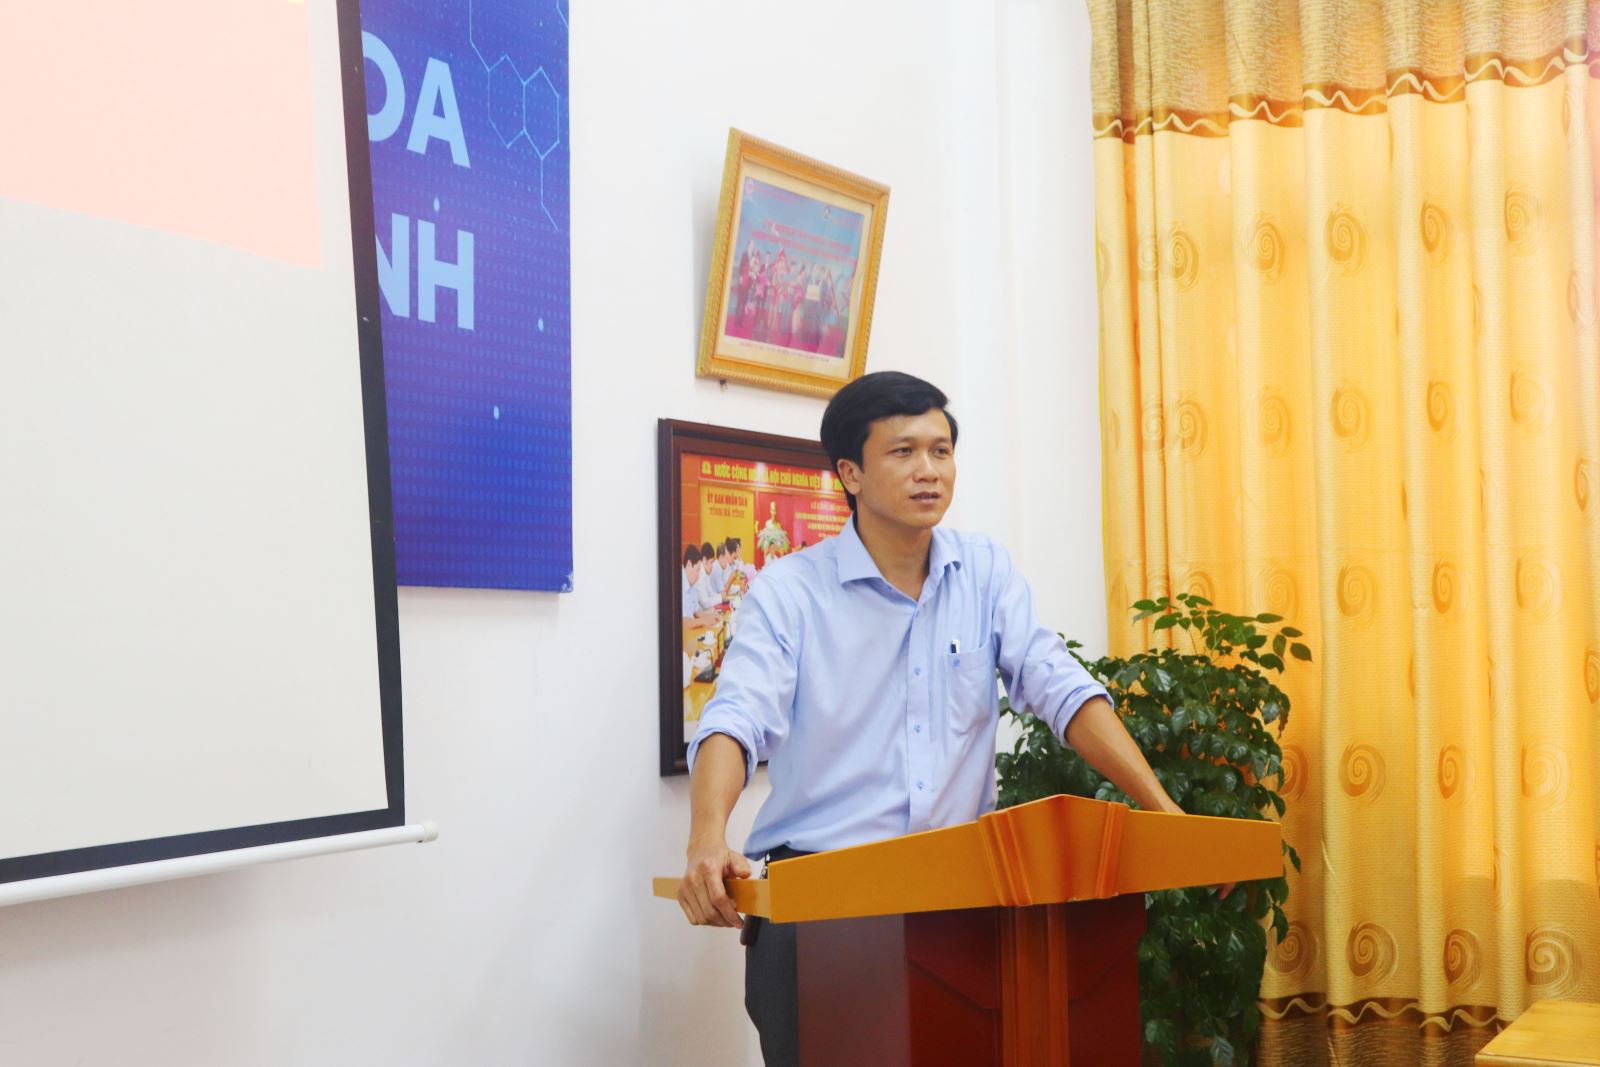 Đồng chí Nguyễn Tiến Vũ - Ủy viên BCH Đảng bộ, Phó Giám đốc bệnh viện phát biểu tại buổi lễ.